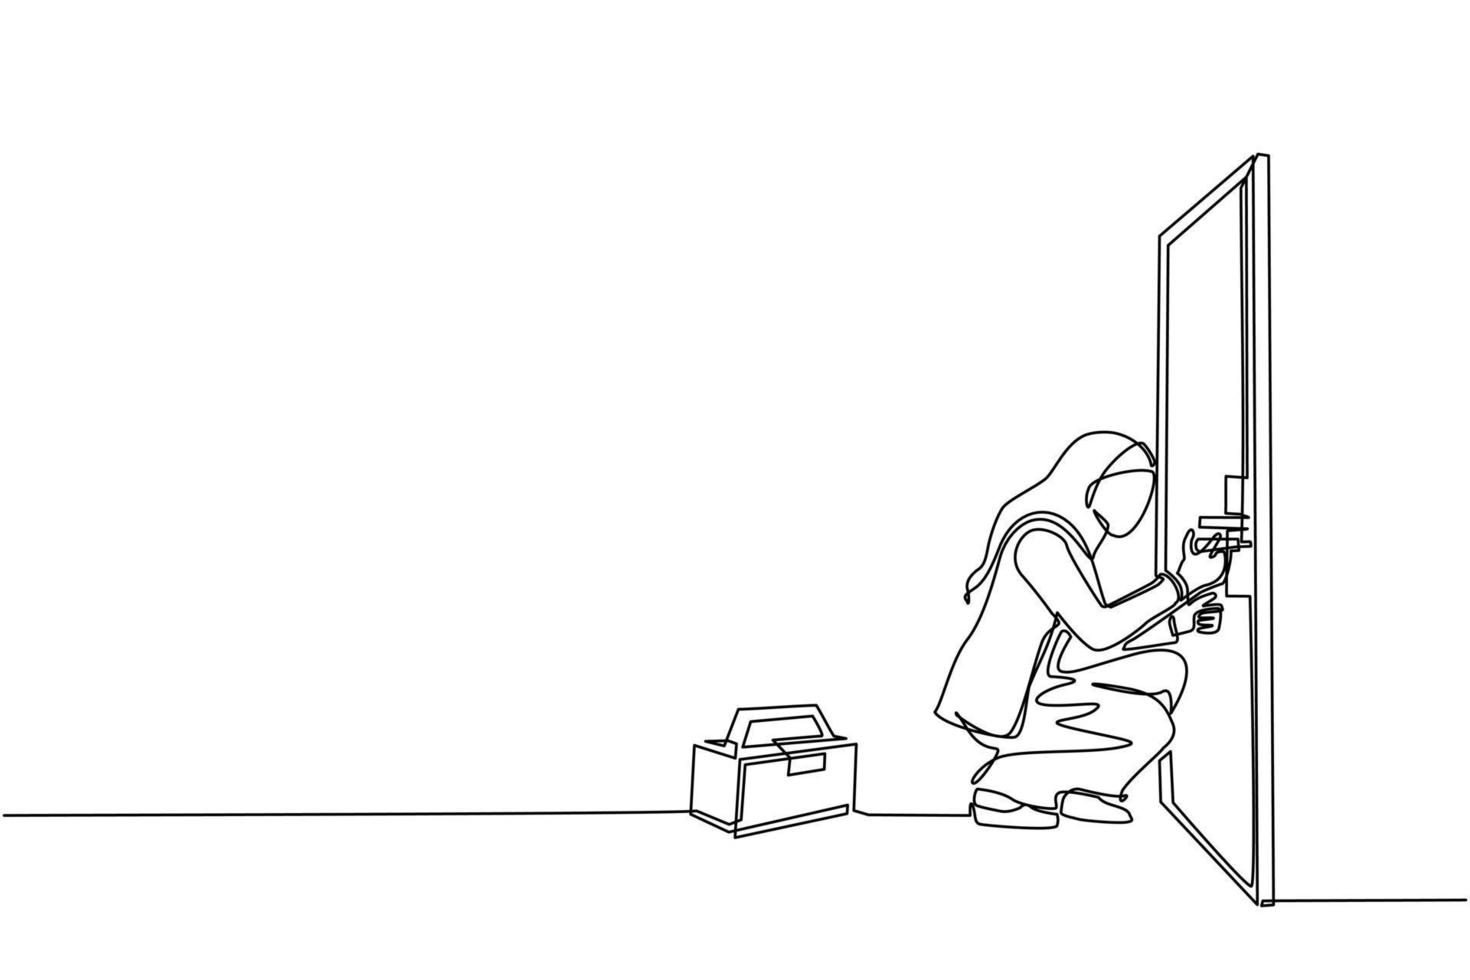 enda kontinuerlig linjeritning arabisk affärskvinna nyfiken dörrhandtag med skruvmejsel. kvinna reparera trasigt handtag dörrknopp med handywoman verktyg i verktygslådan. affärsidé. en linje rita design vektor